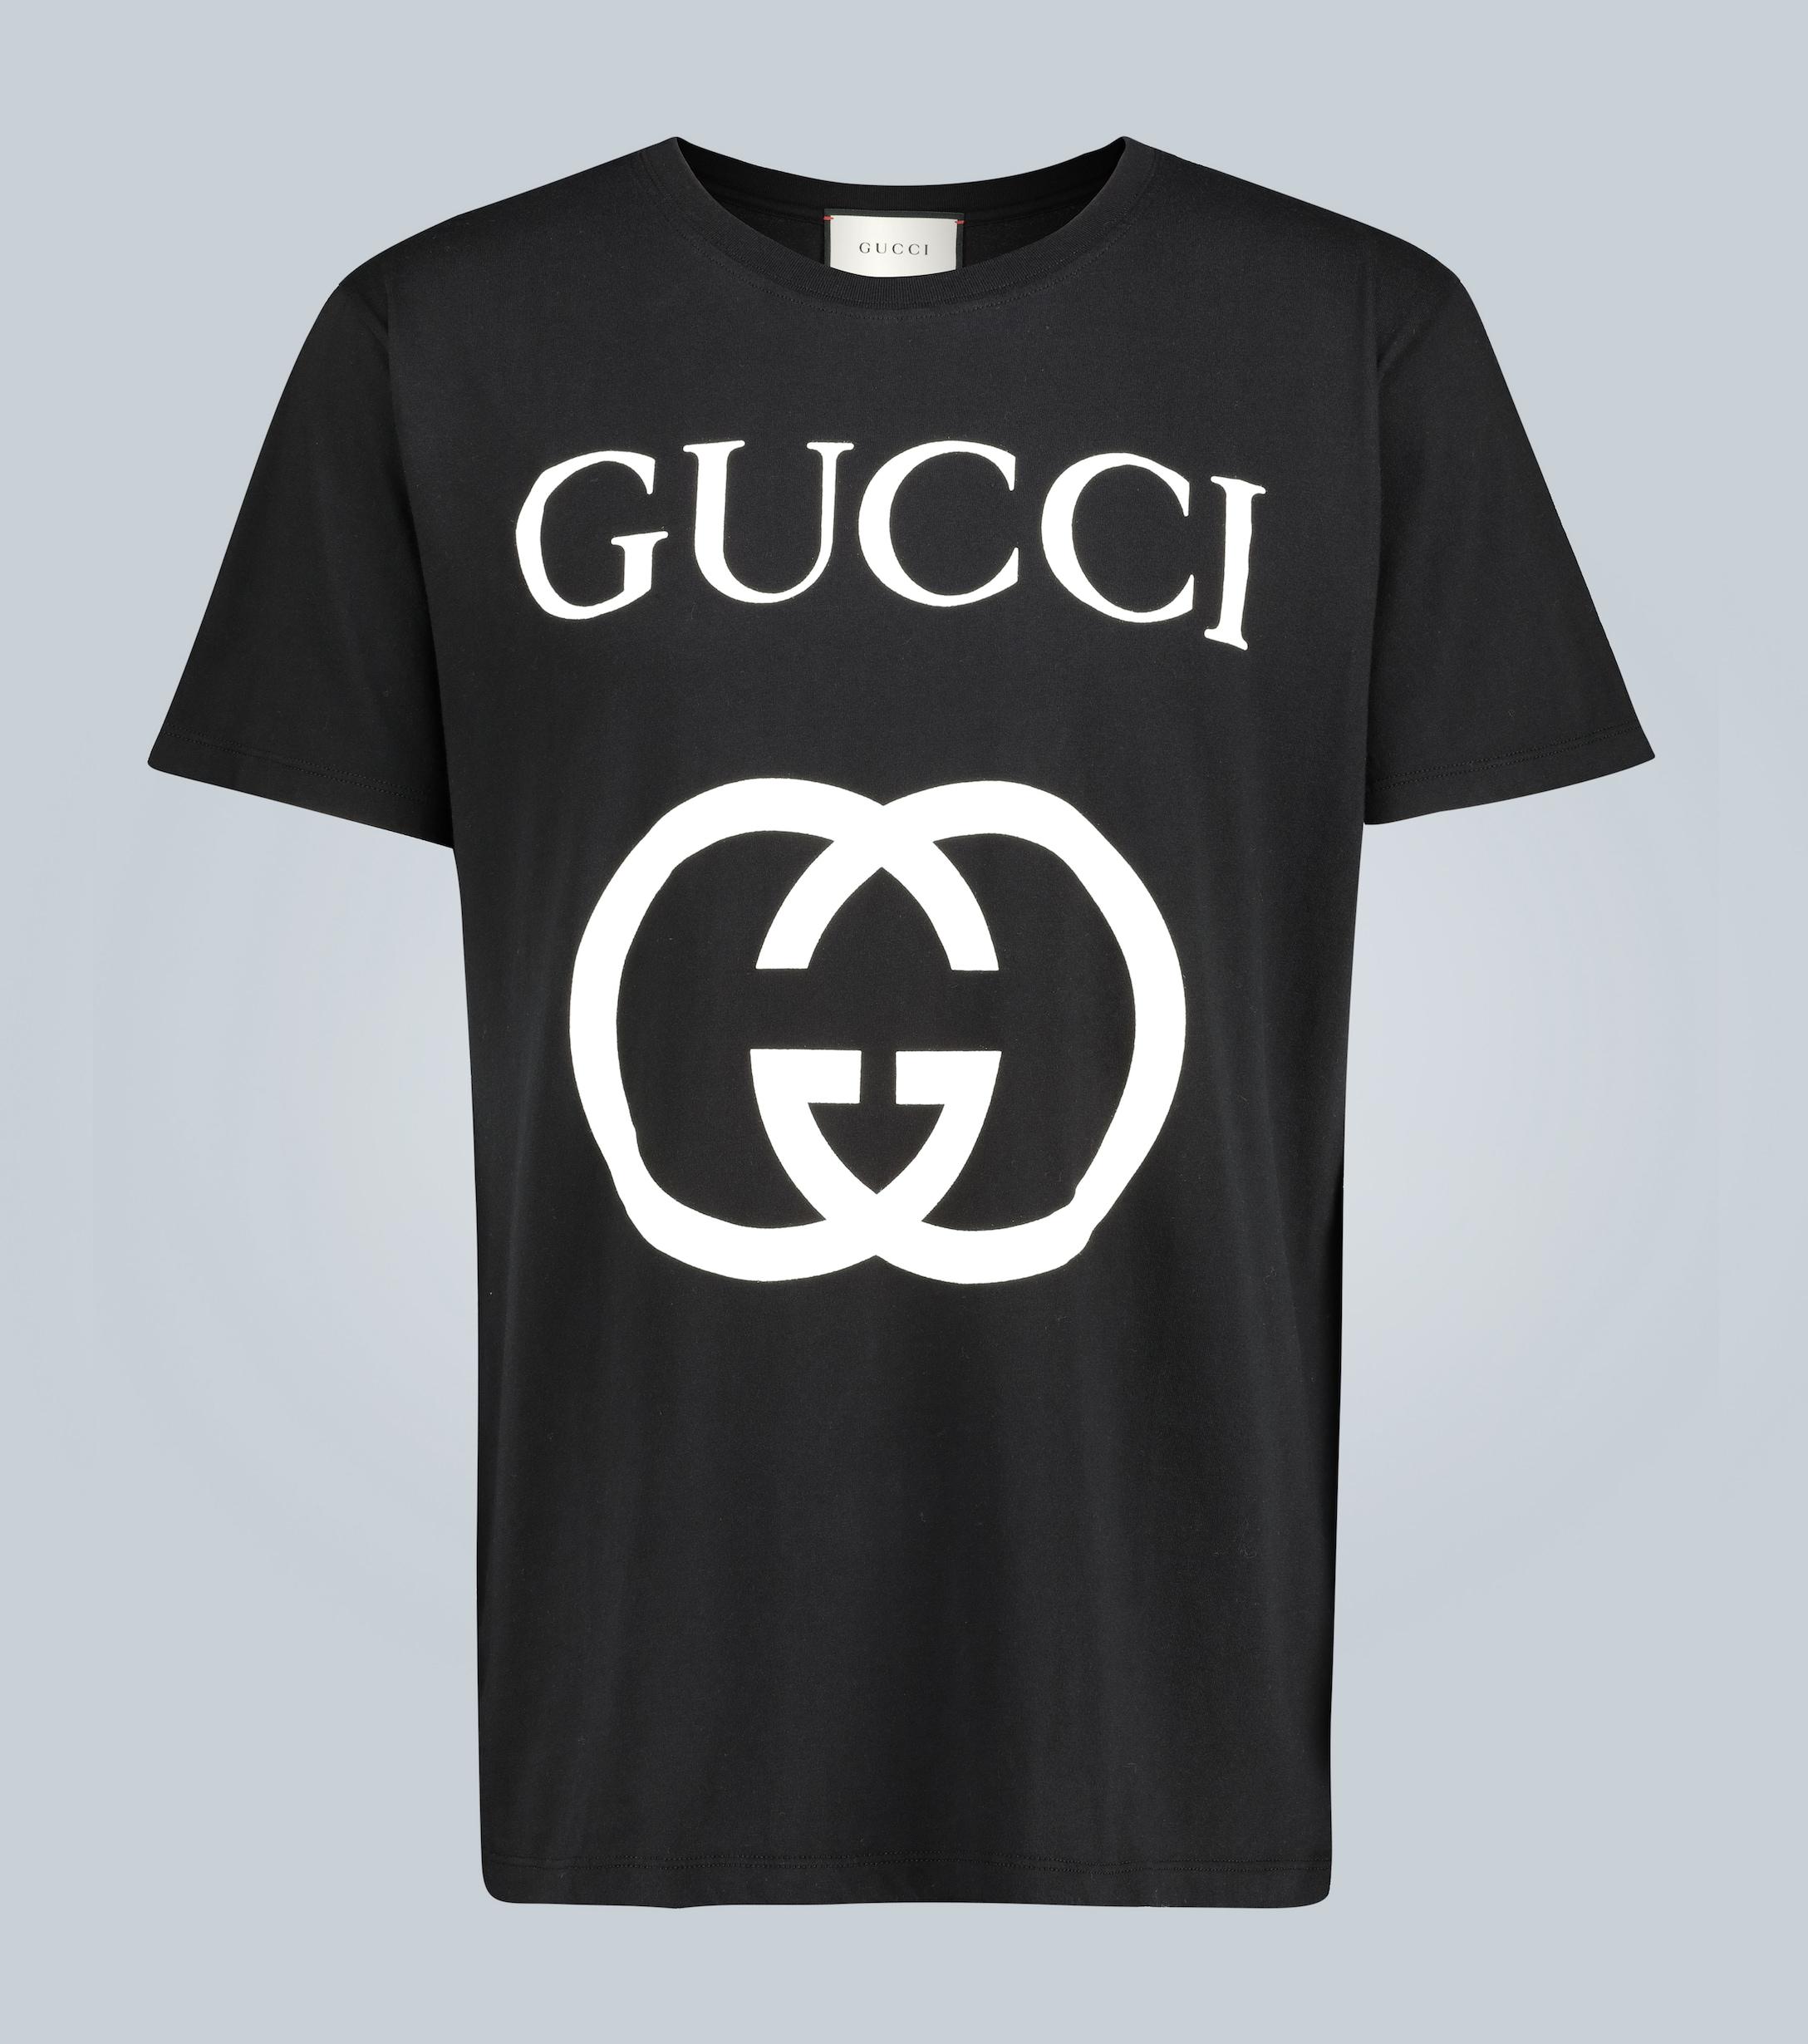 gucci black t shirt price